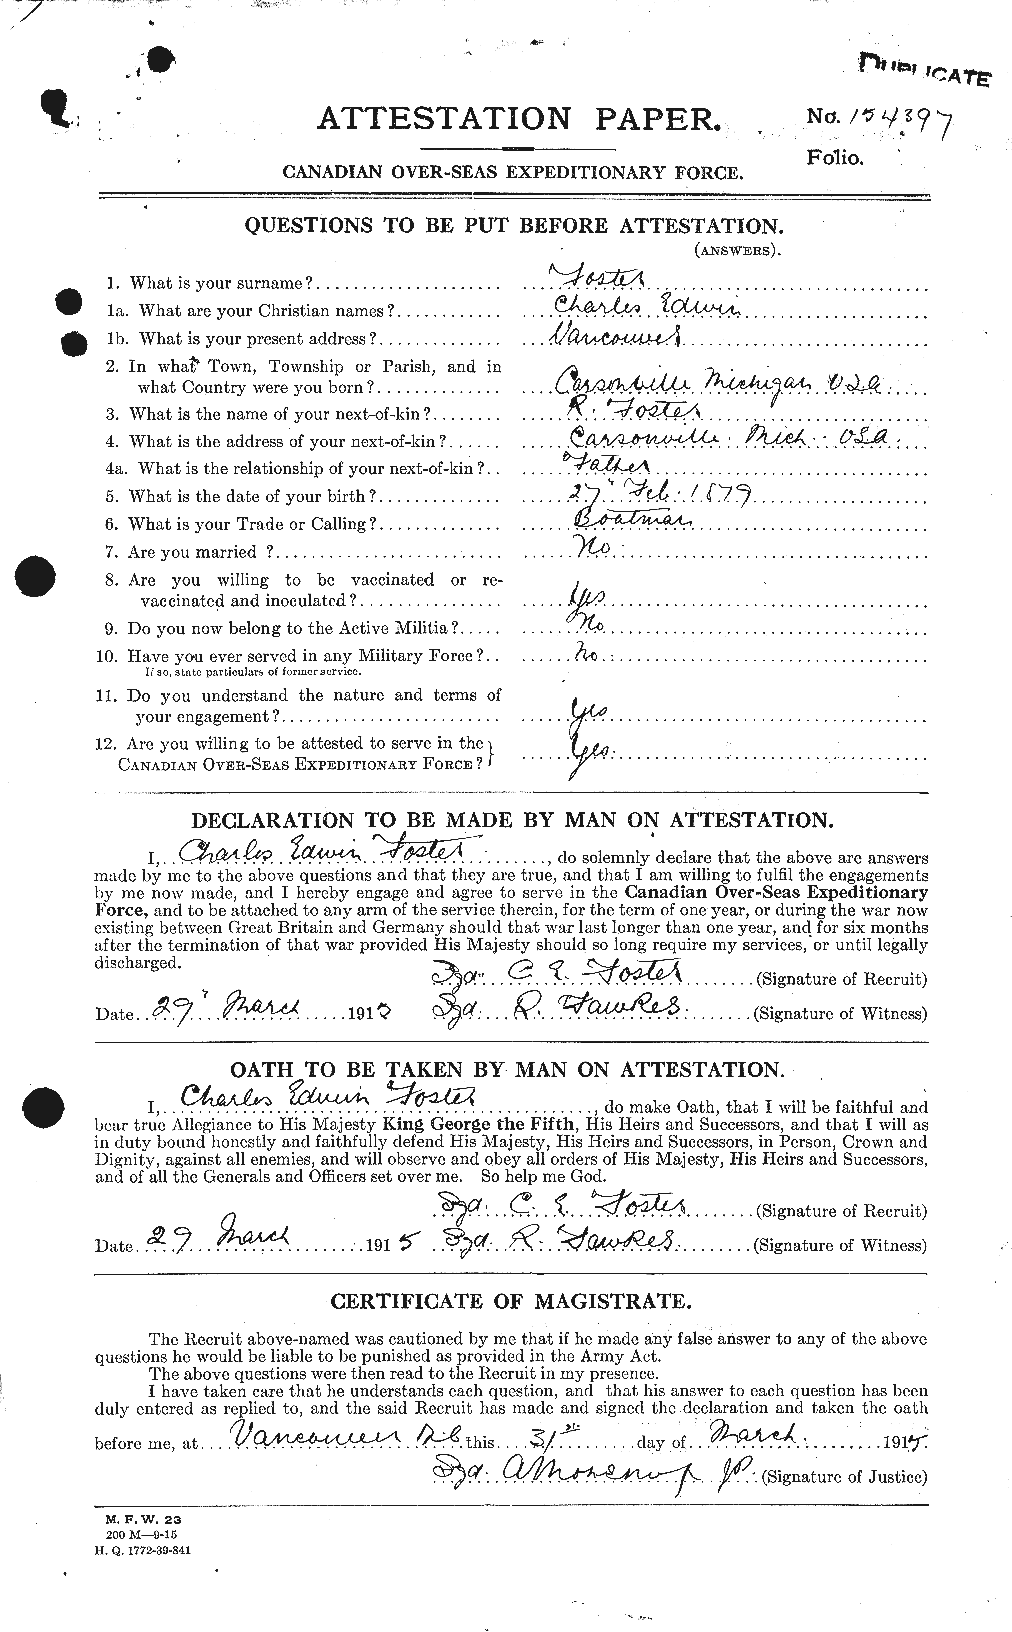 Dossiers du Personnel de la Première Guerre mondiale - CEC 330512a